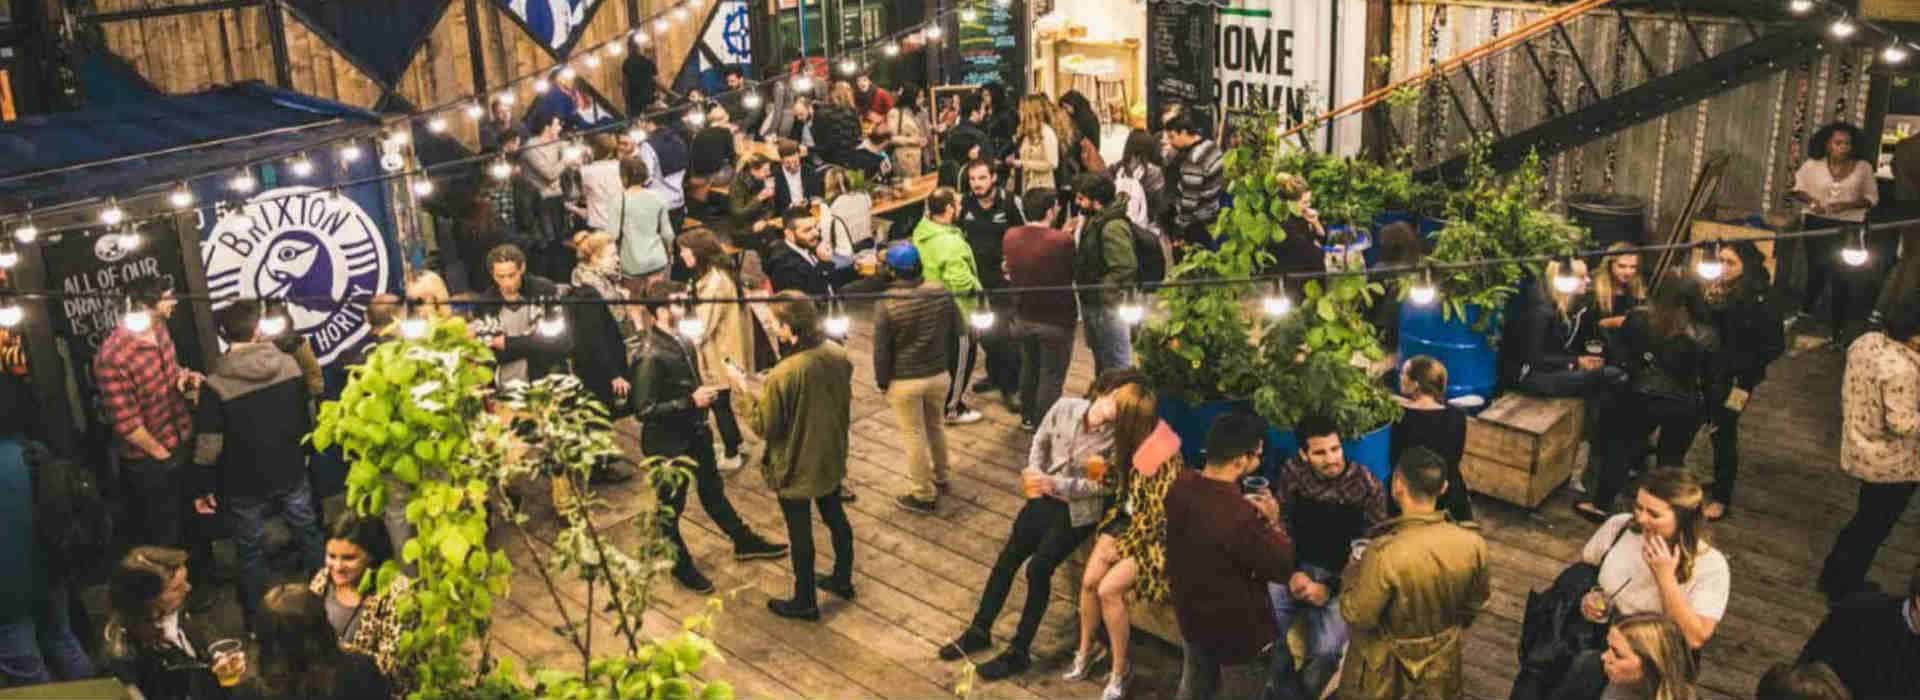 Londra, Pop Brixton: lo spazio autogestito da giovani imprenditori